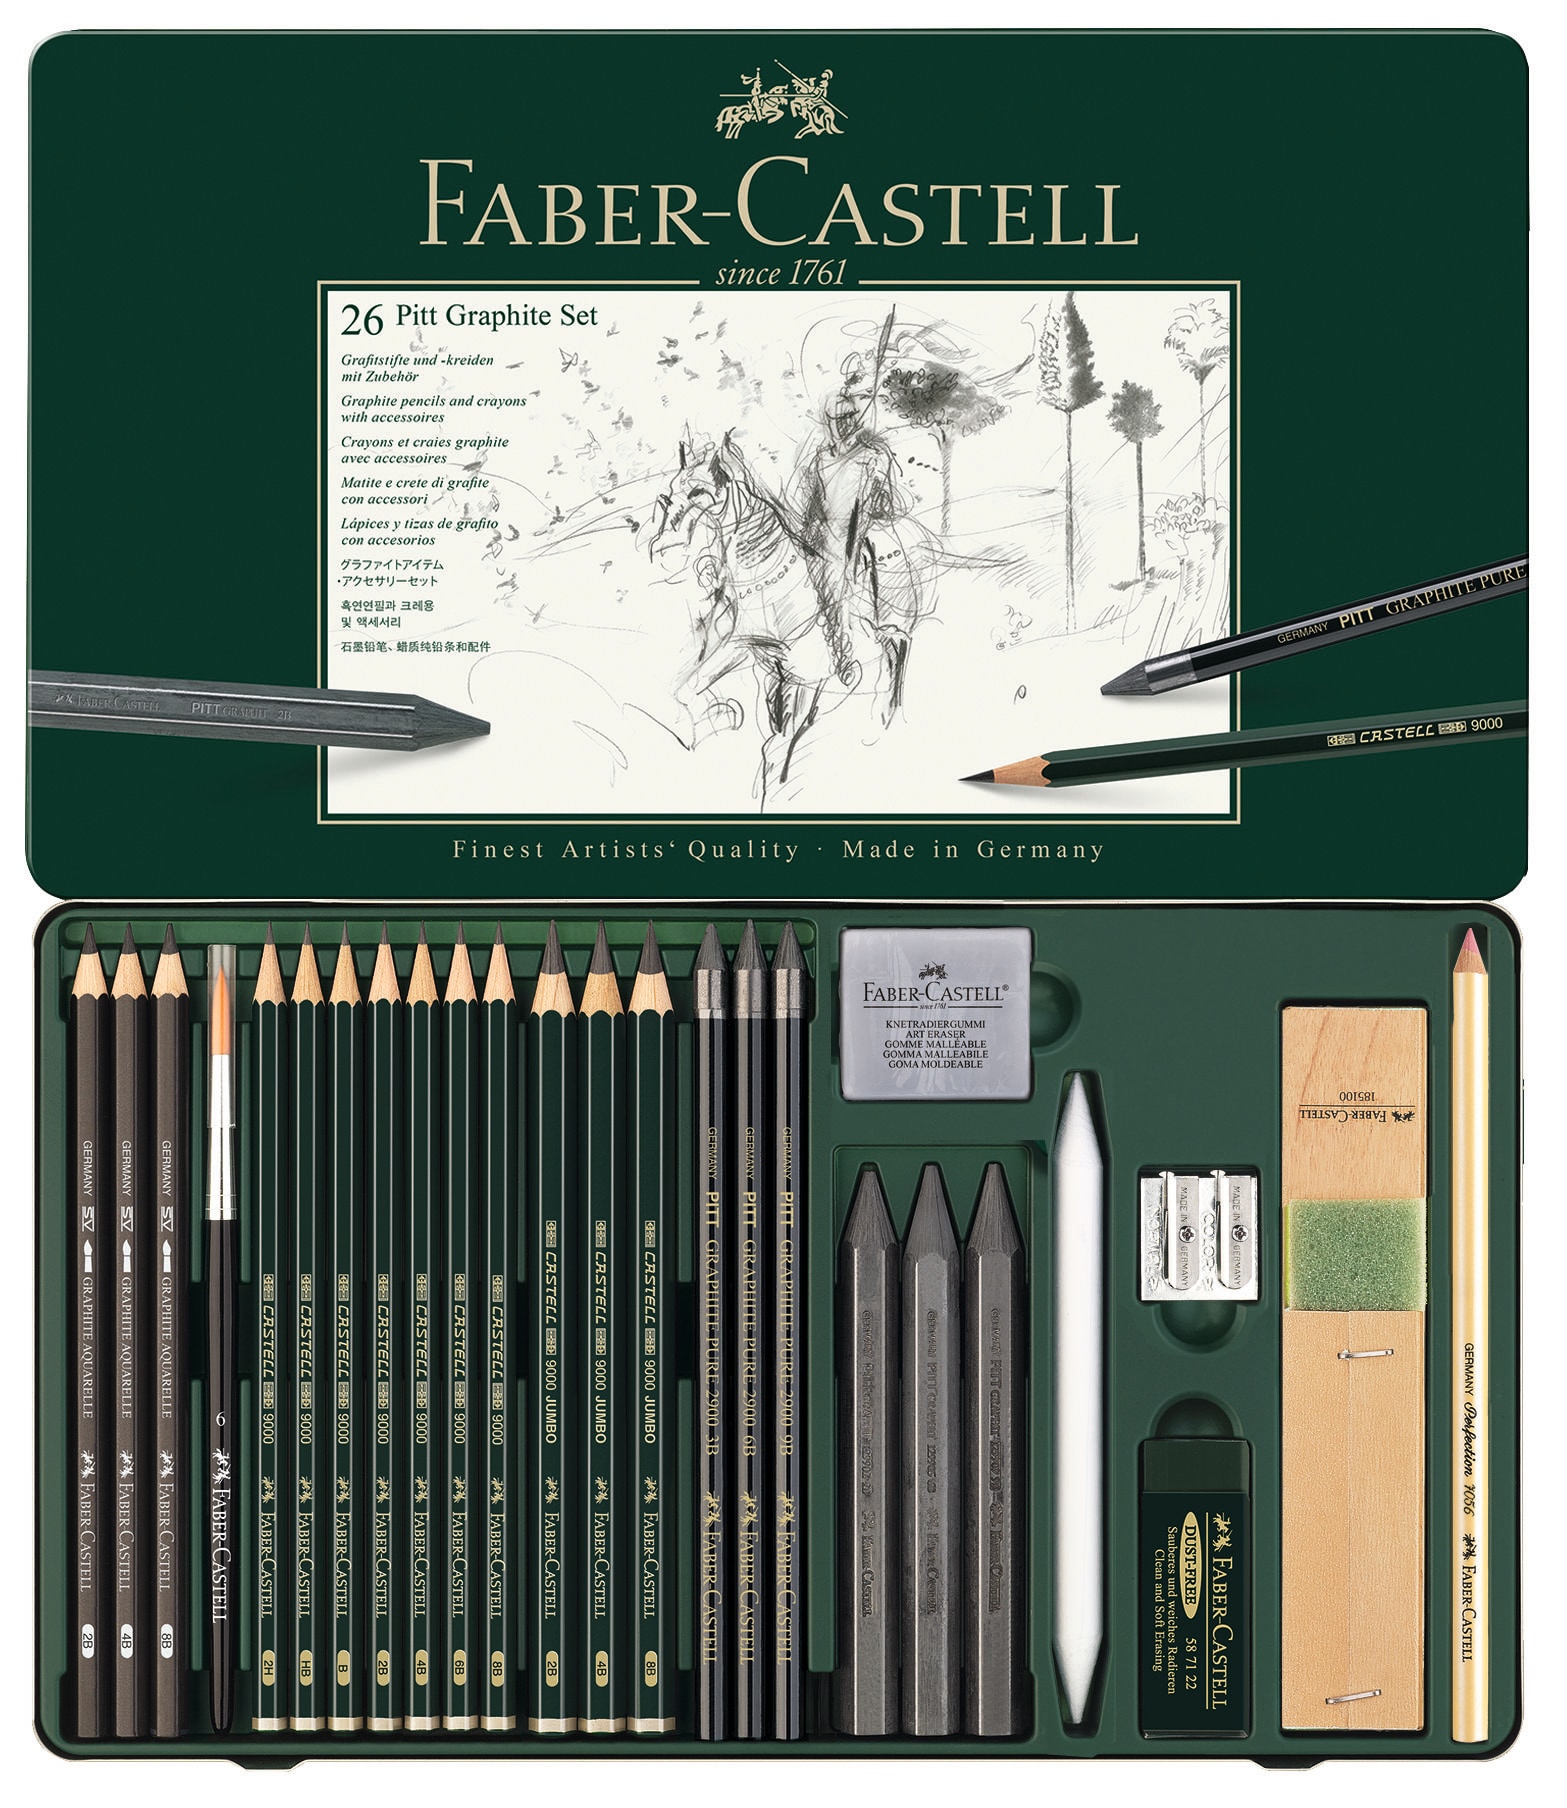 Faber-Castell Faber-Castell Graphite Pencil Art Set - 26 Piece Kit